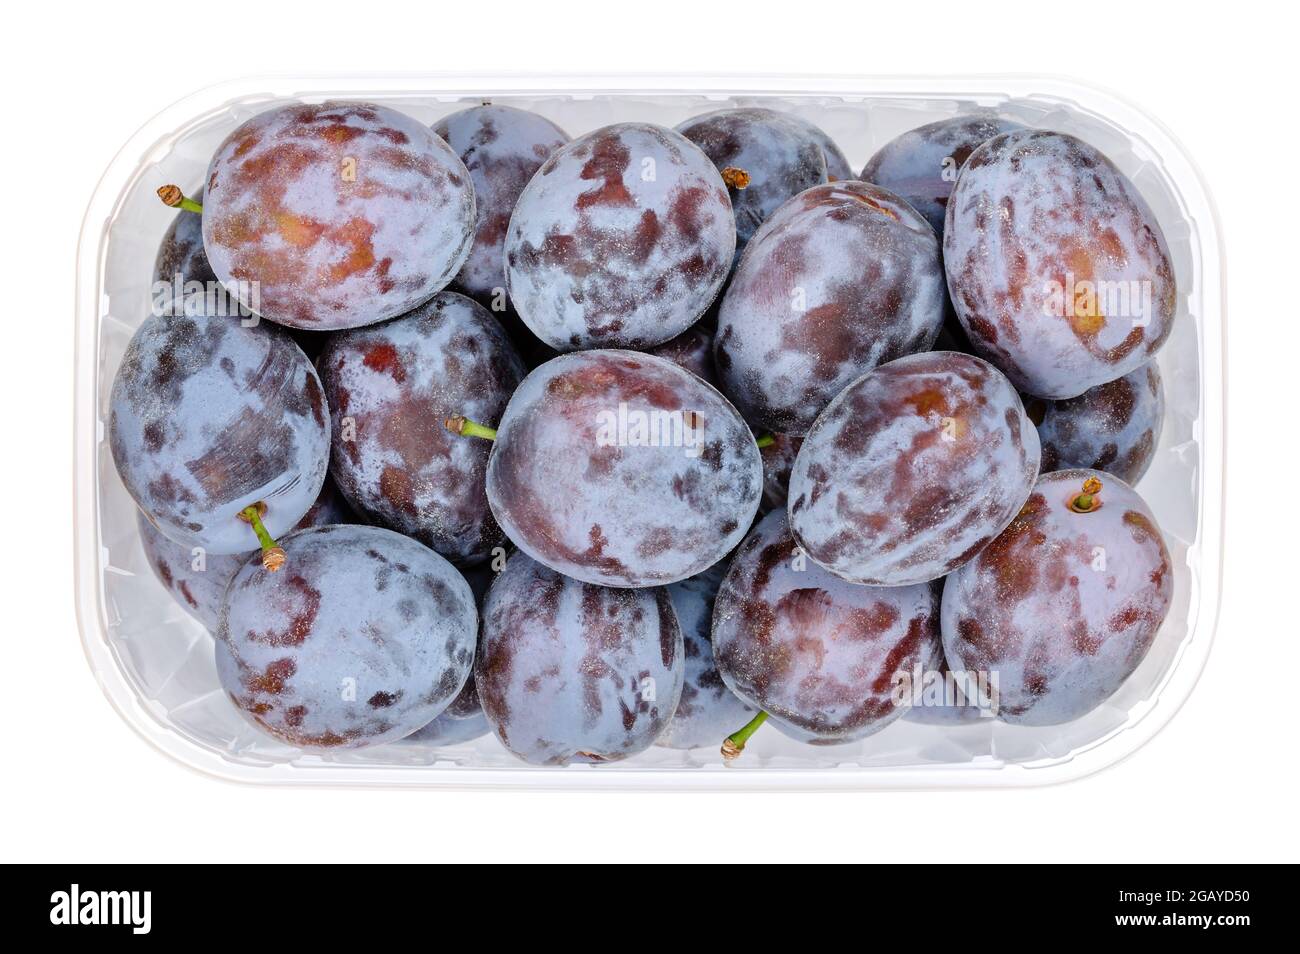 Prugne di prugne mature in un contenitore di plastica trasparente. Frutta fresca e una sottospecie di Prunus domestica, un frutto di pietra, detto anche prugna europea. Foto Stock